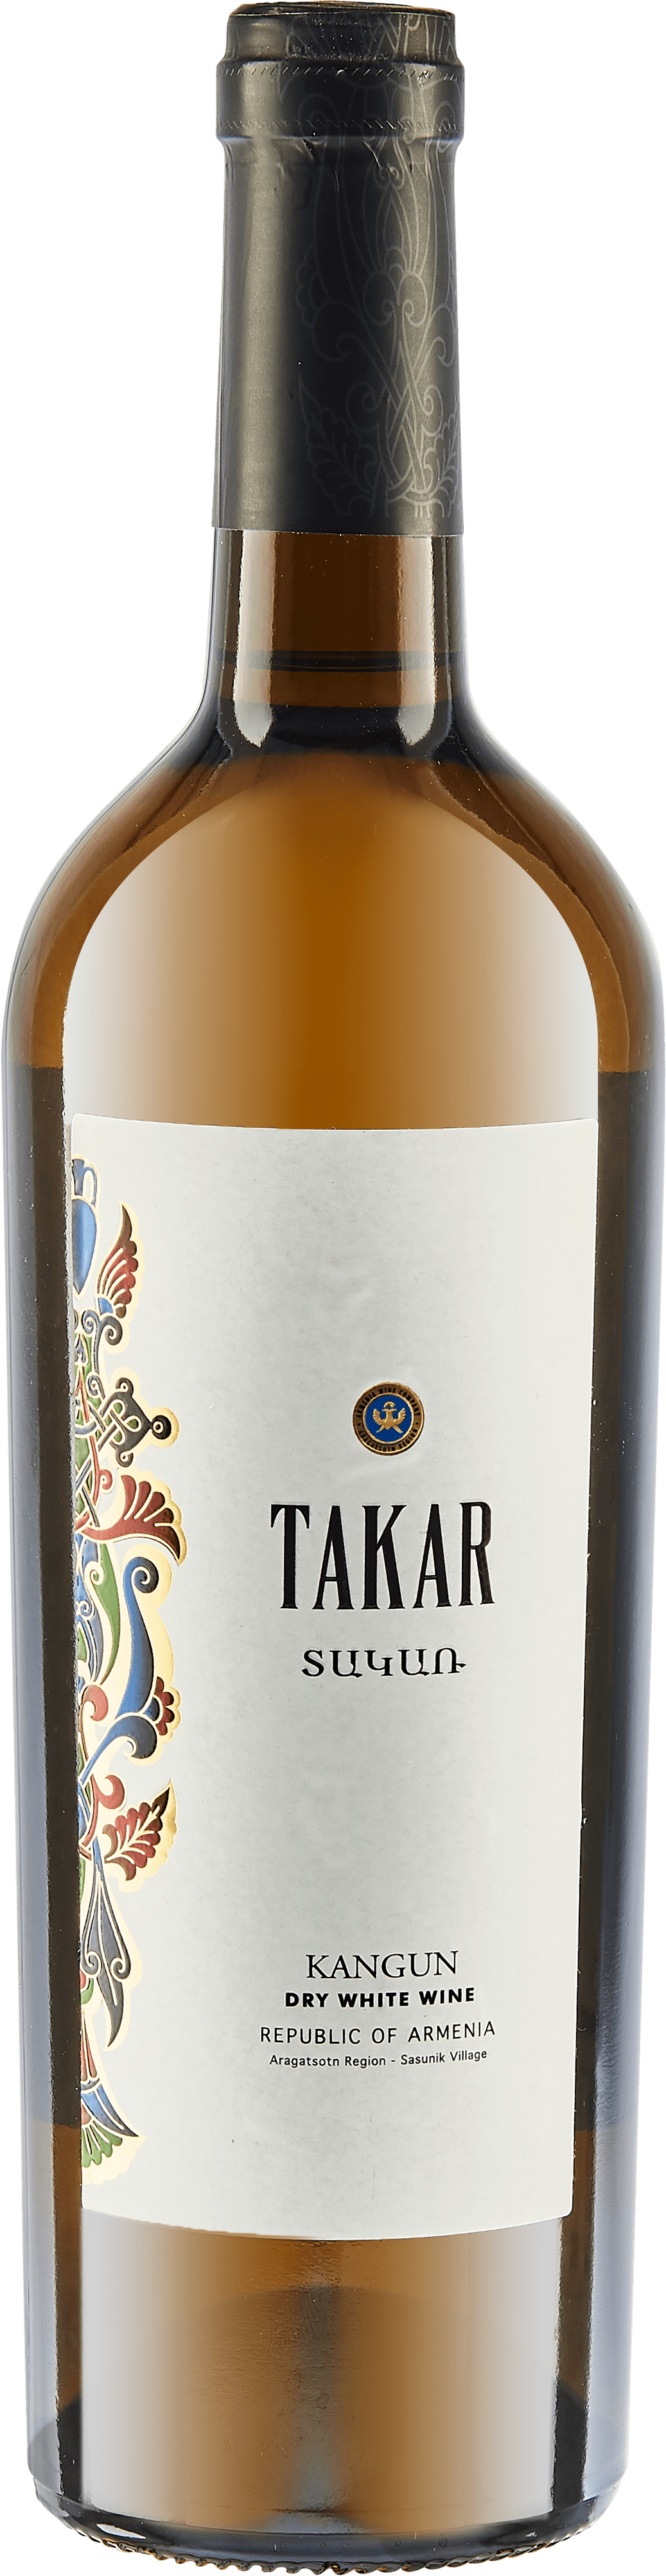 Armenia Wines Company - Takar